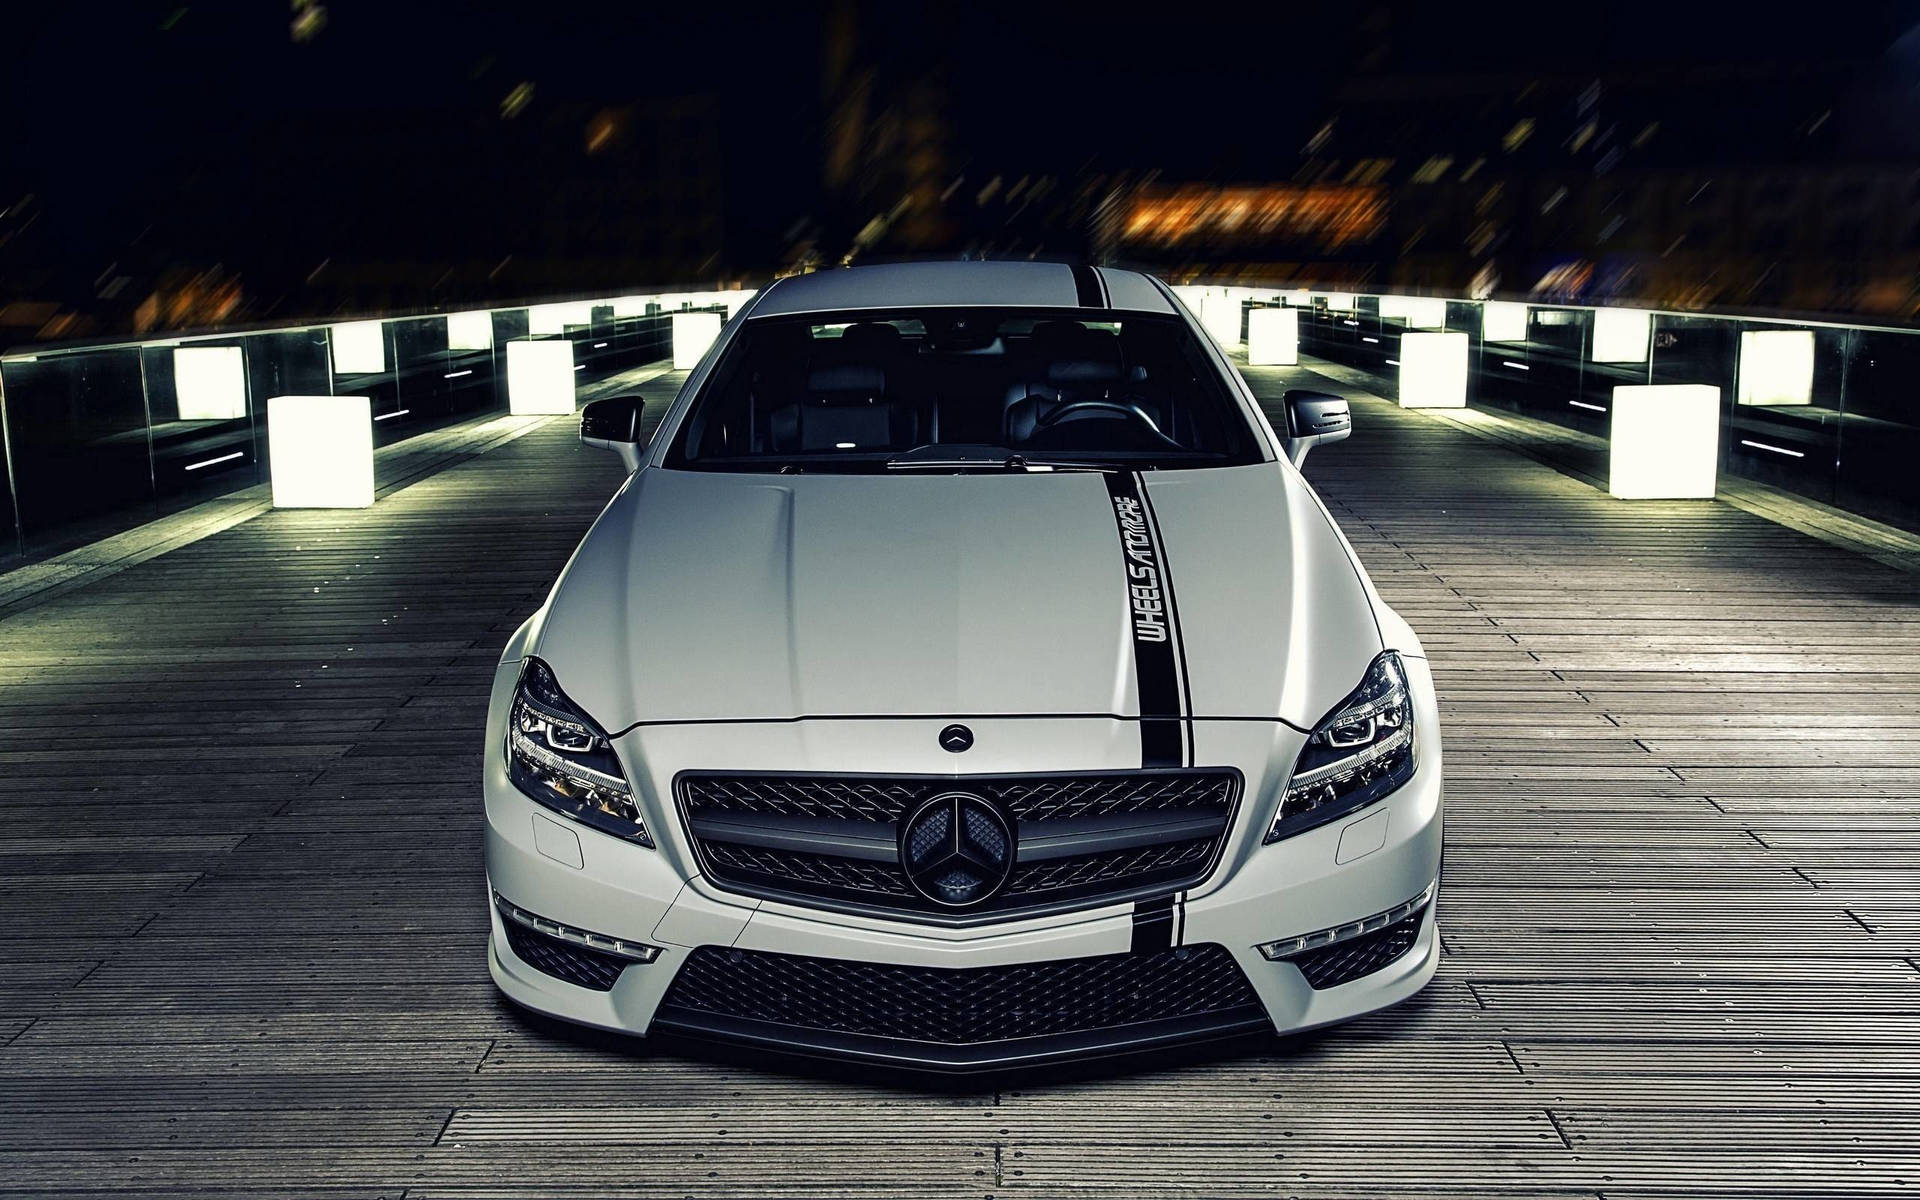 Embracer luksusen af høj ydeevne bil i Mercedes-Benz AMG. Wallpaper